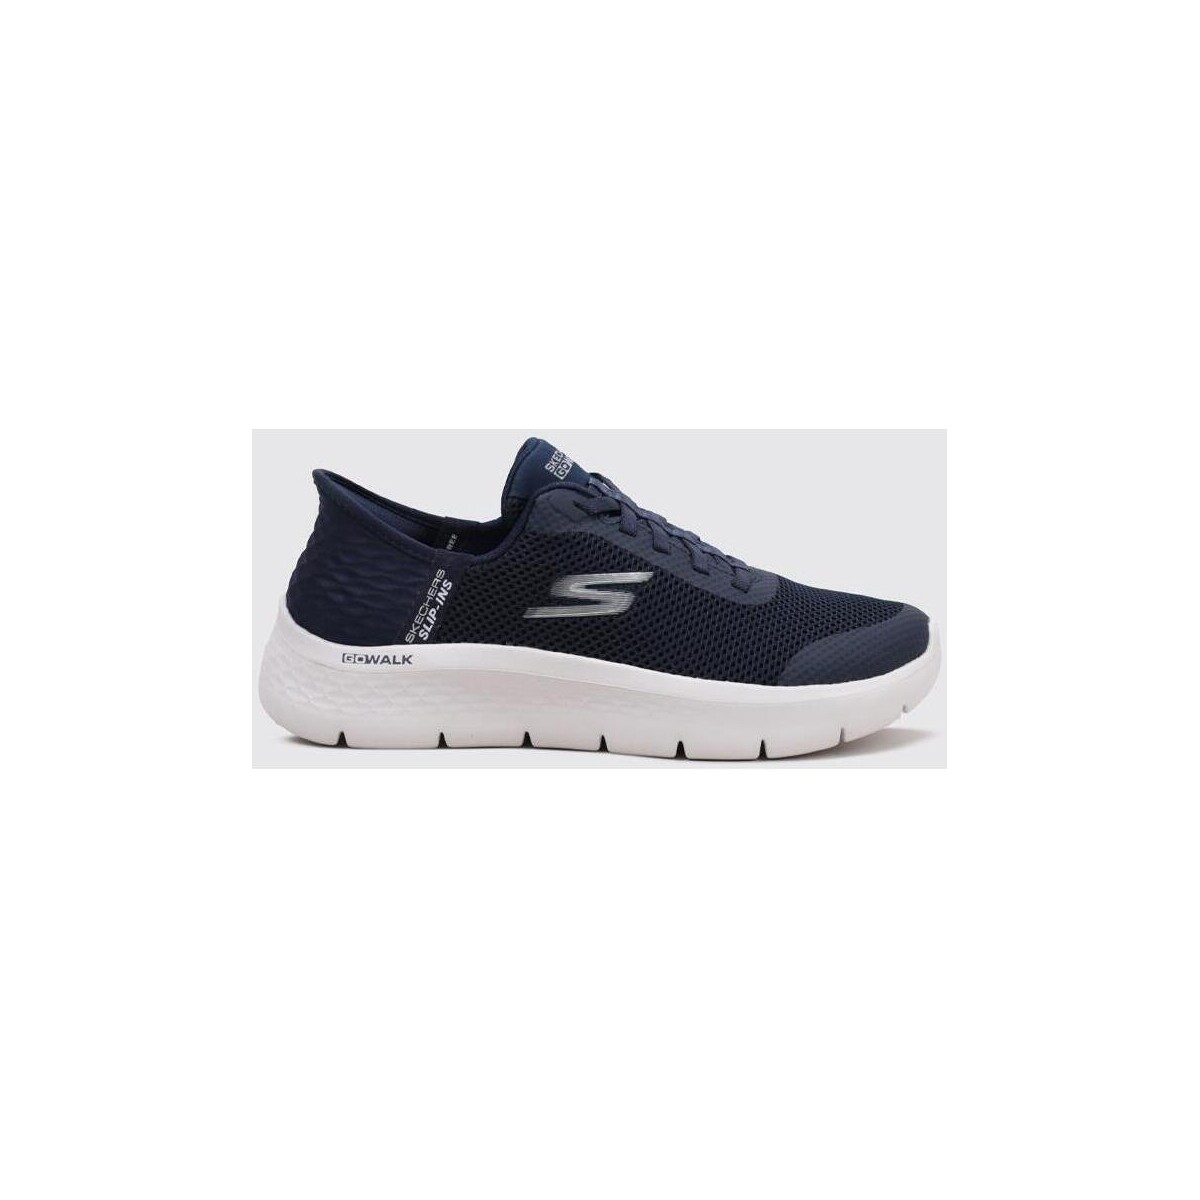 Sapatos Mulher Sapatilhas Skechers SLIP-INS  GO WALK FLEX Azul